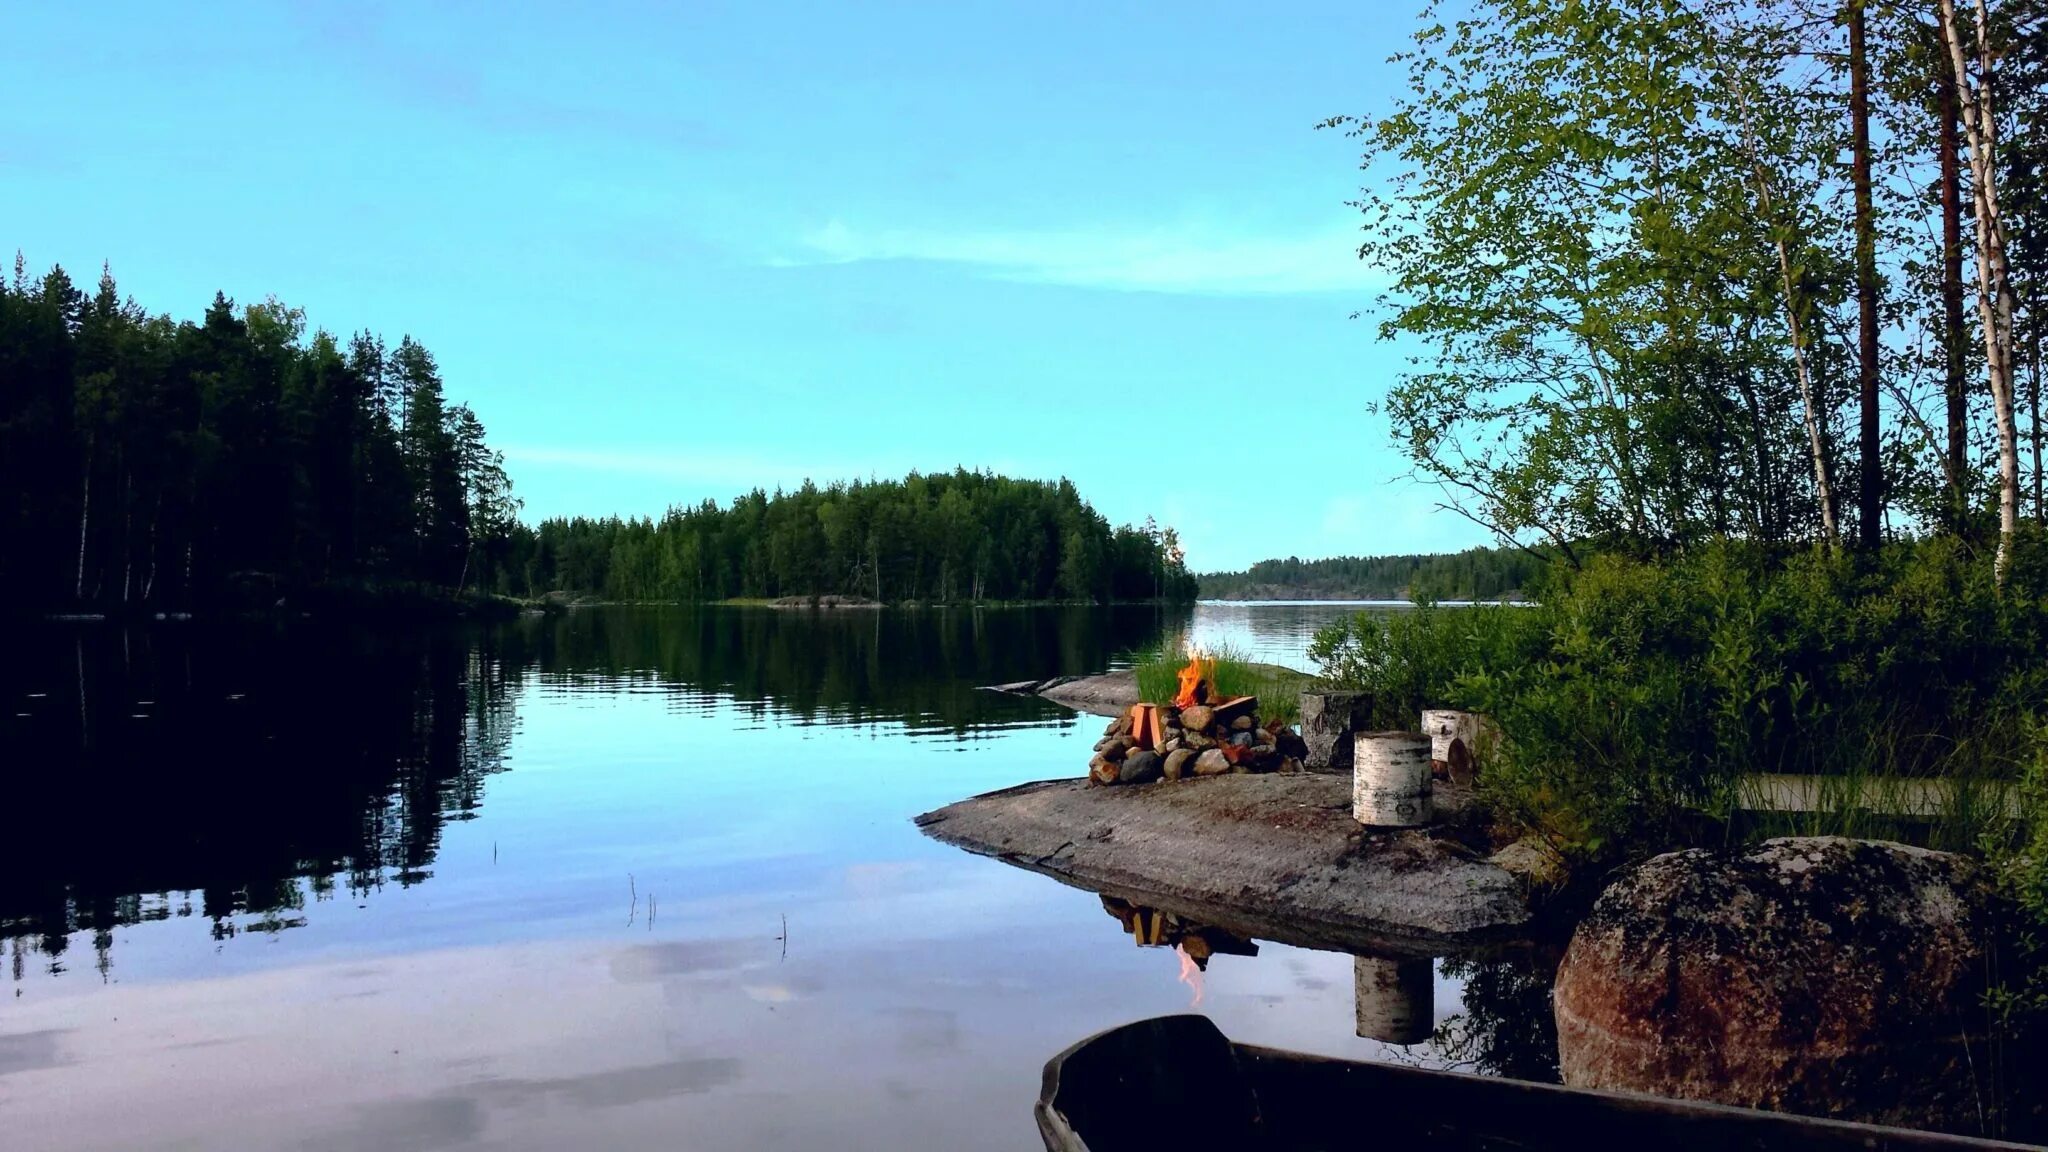 Финское озеро 5. Озеро Штерн Финляндия. Озеро Сайма Финляндия. Озеро Оулуярви Финляндия. Сайменские озера в Финляндии.